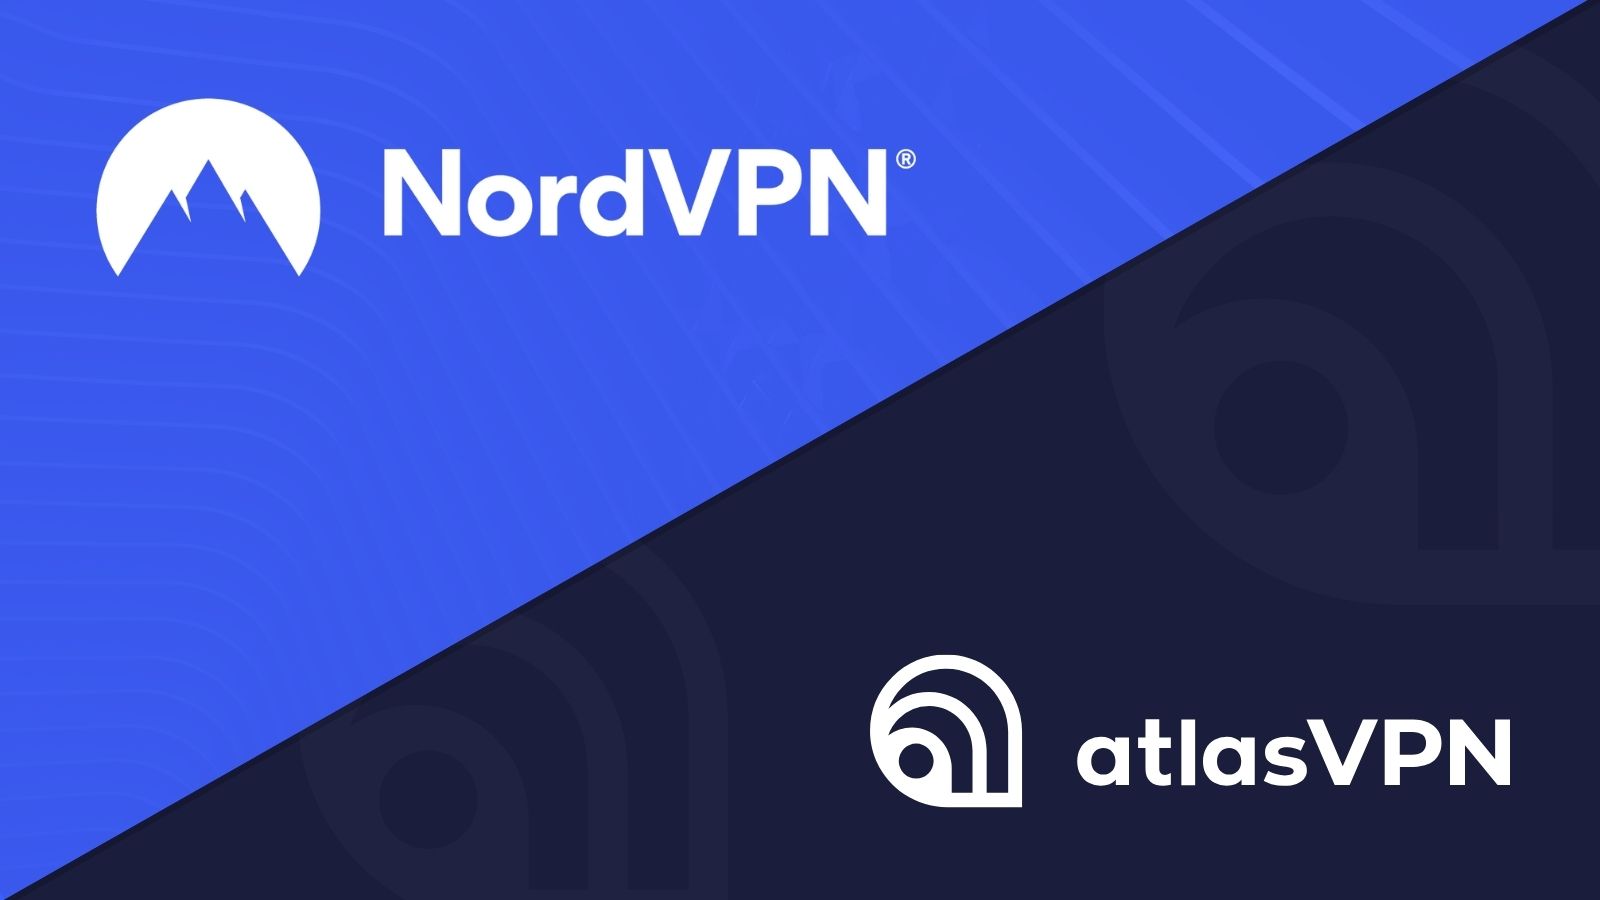 NordVPN and AtlasVPN